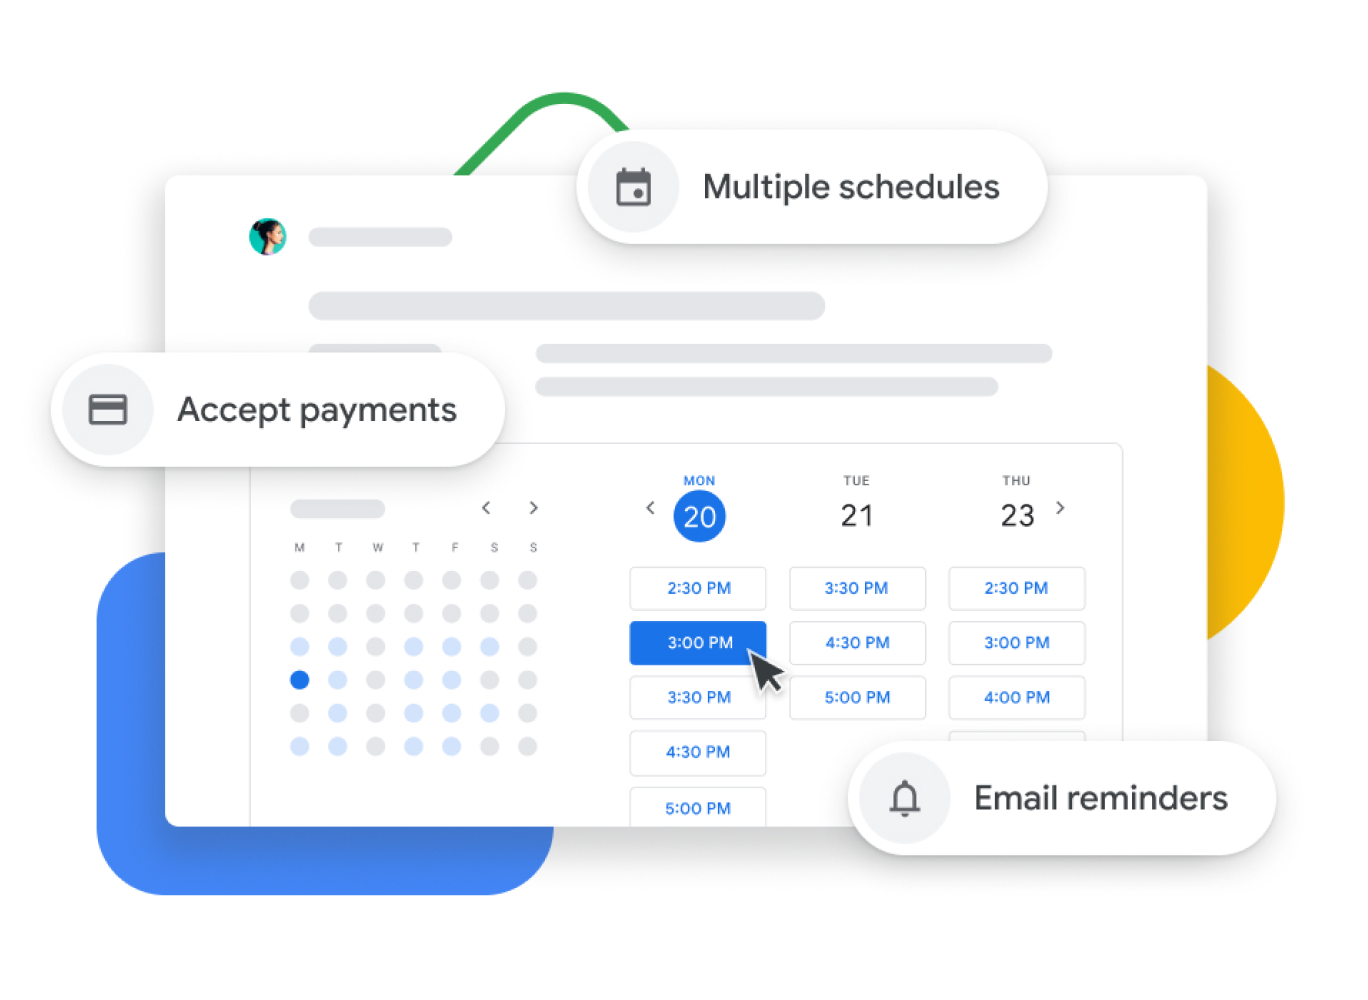 Representação gráfica de um Calendário Google com o agendamento de reuniões que permite aos utilizadores aceitar pagamentos, confirmar reuniões com os clientes e enviar lembretes por email.